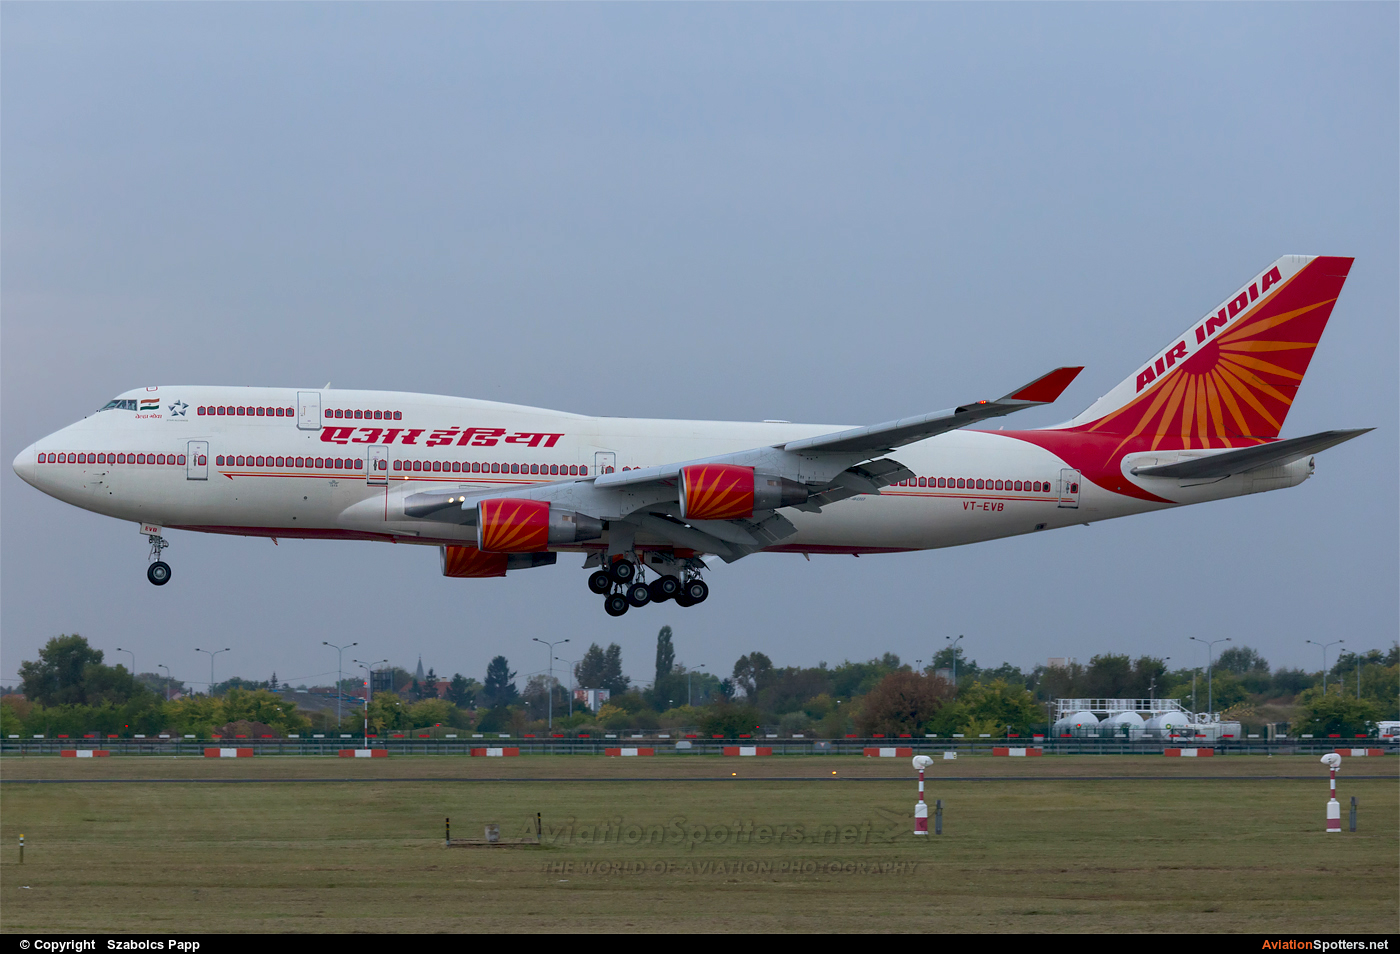 Air India  -  747-400  (VT-EVB) By Szabolcs Papp (mr.szabi)